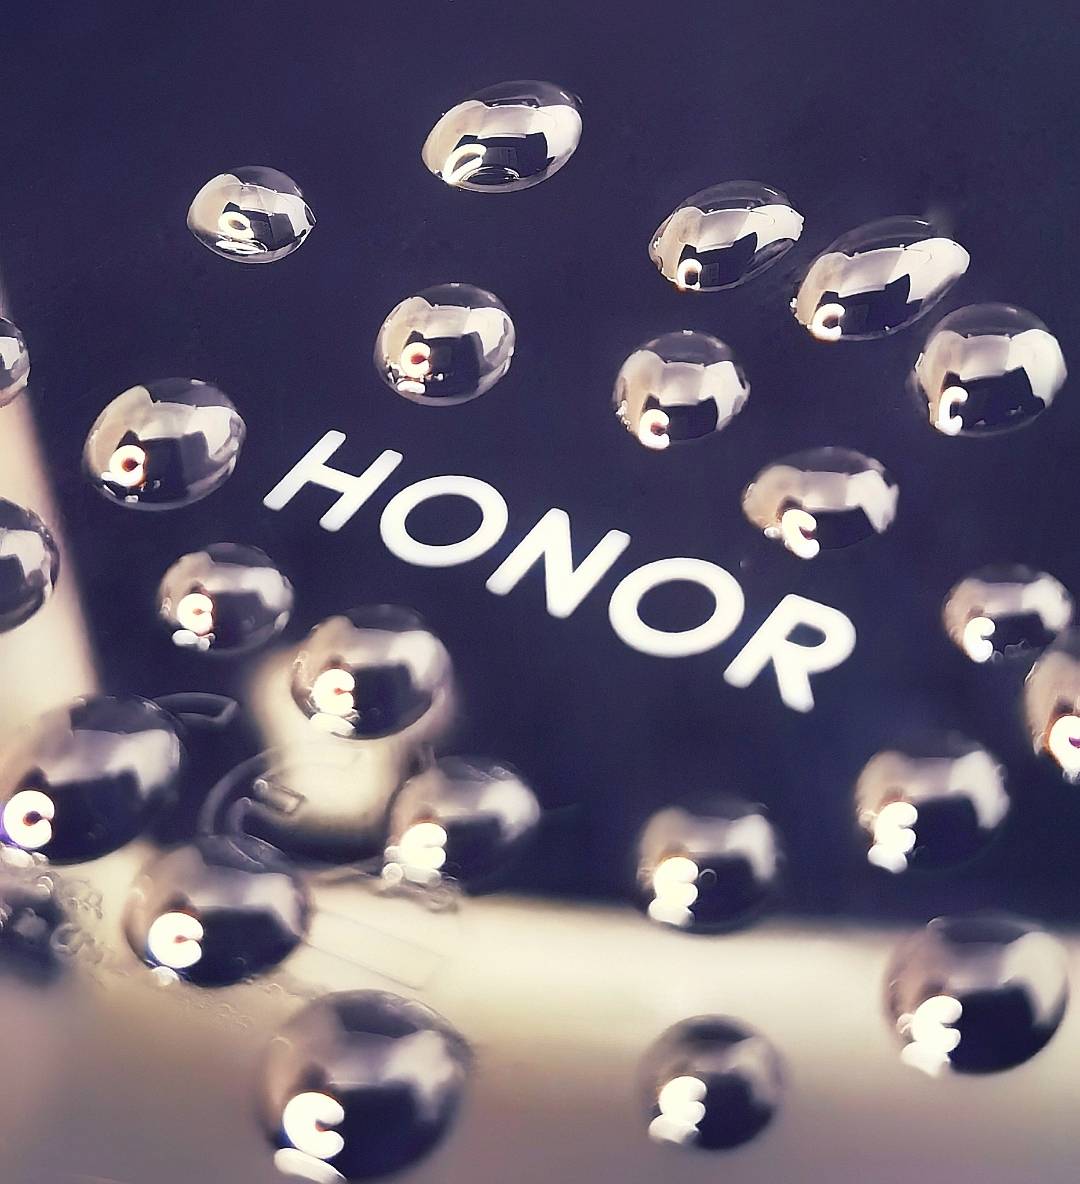 Fotos-von-Honor-Produkt-und-Logo-erstellen